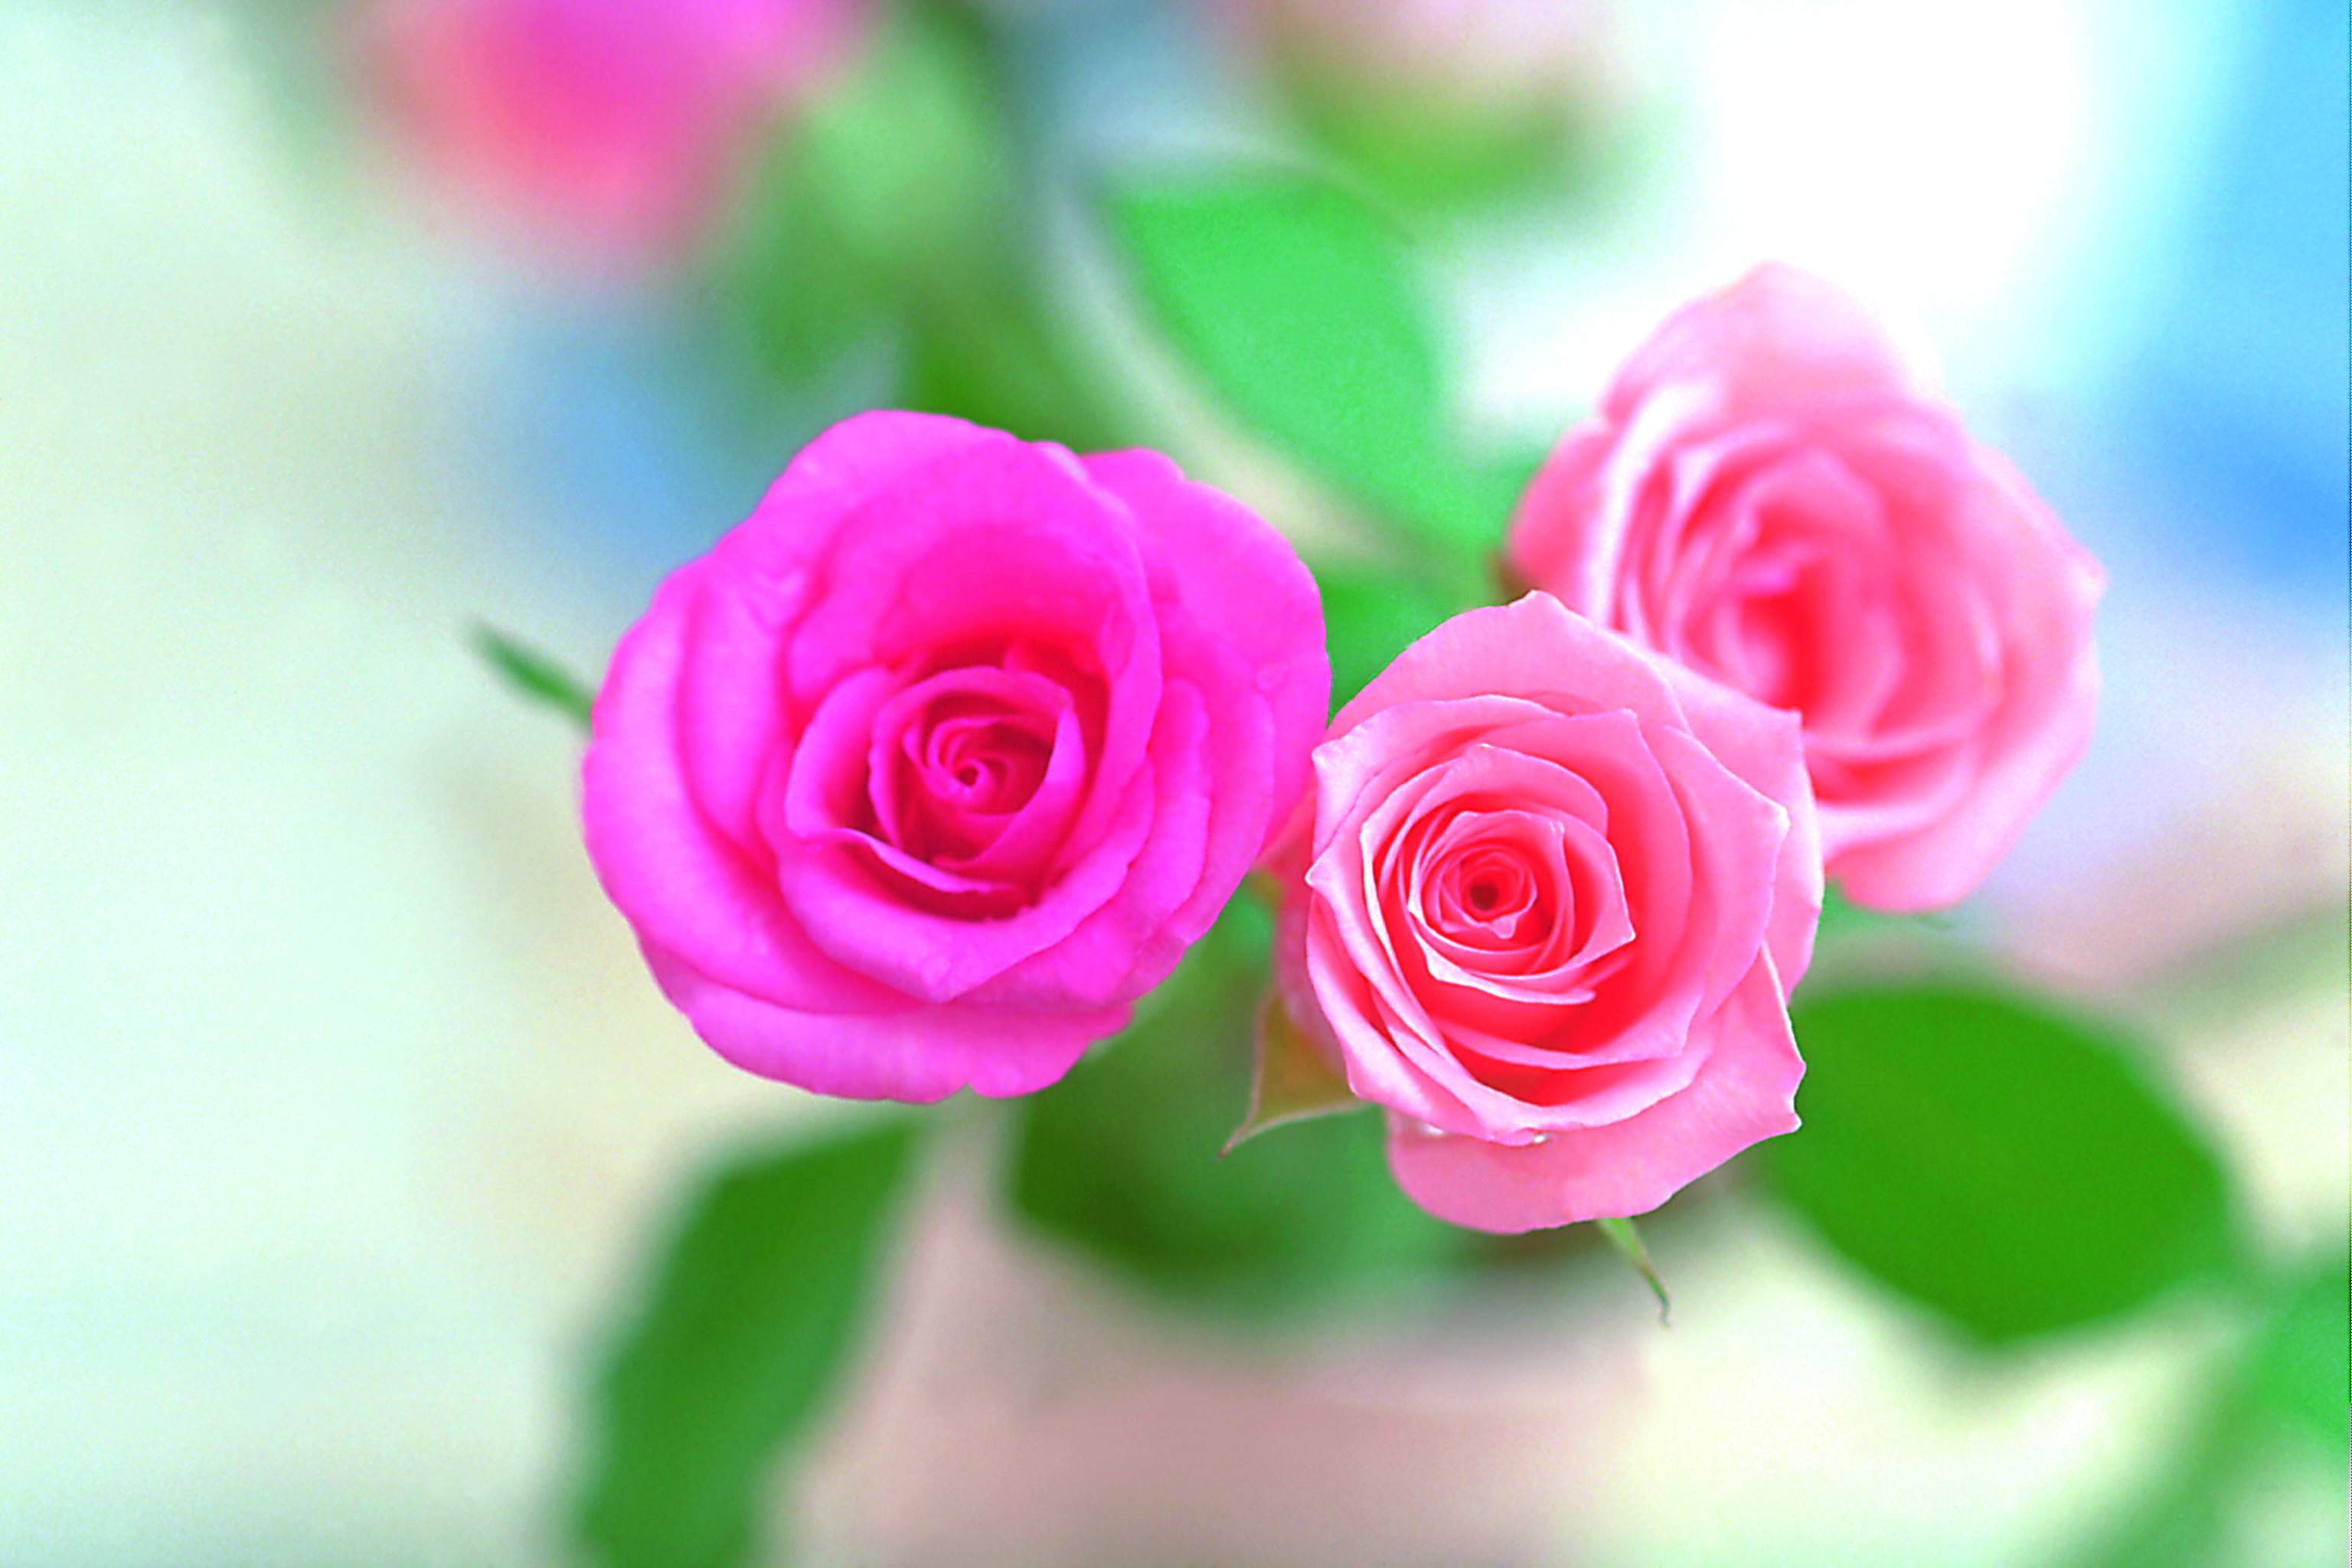 Hình nền hoa hồng hồng tuyệt đẹp 3072x2048 Tải xuống miễn phí